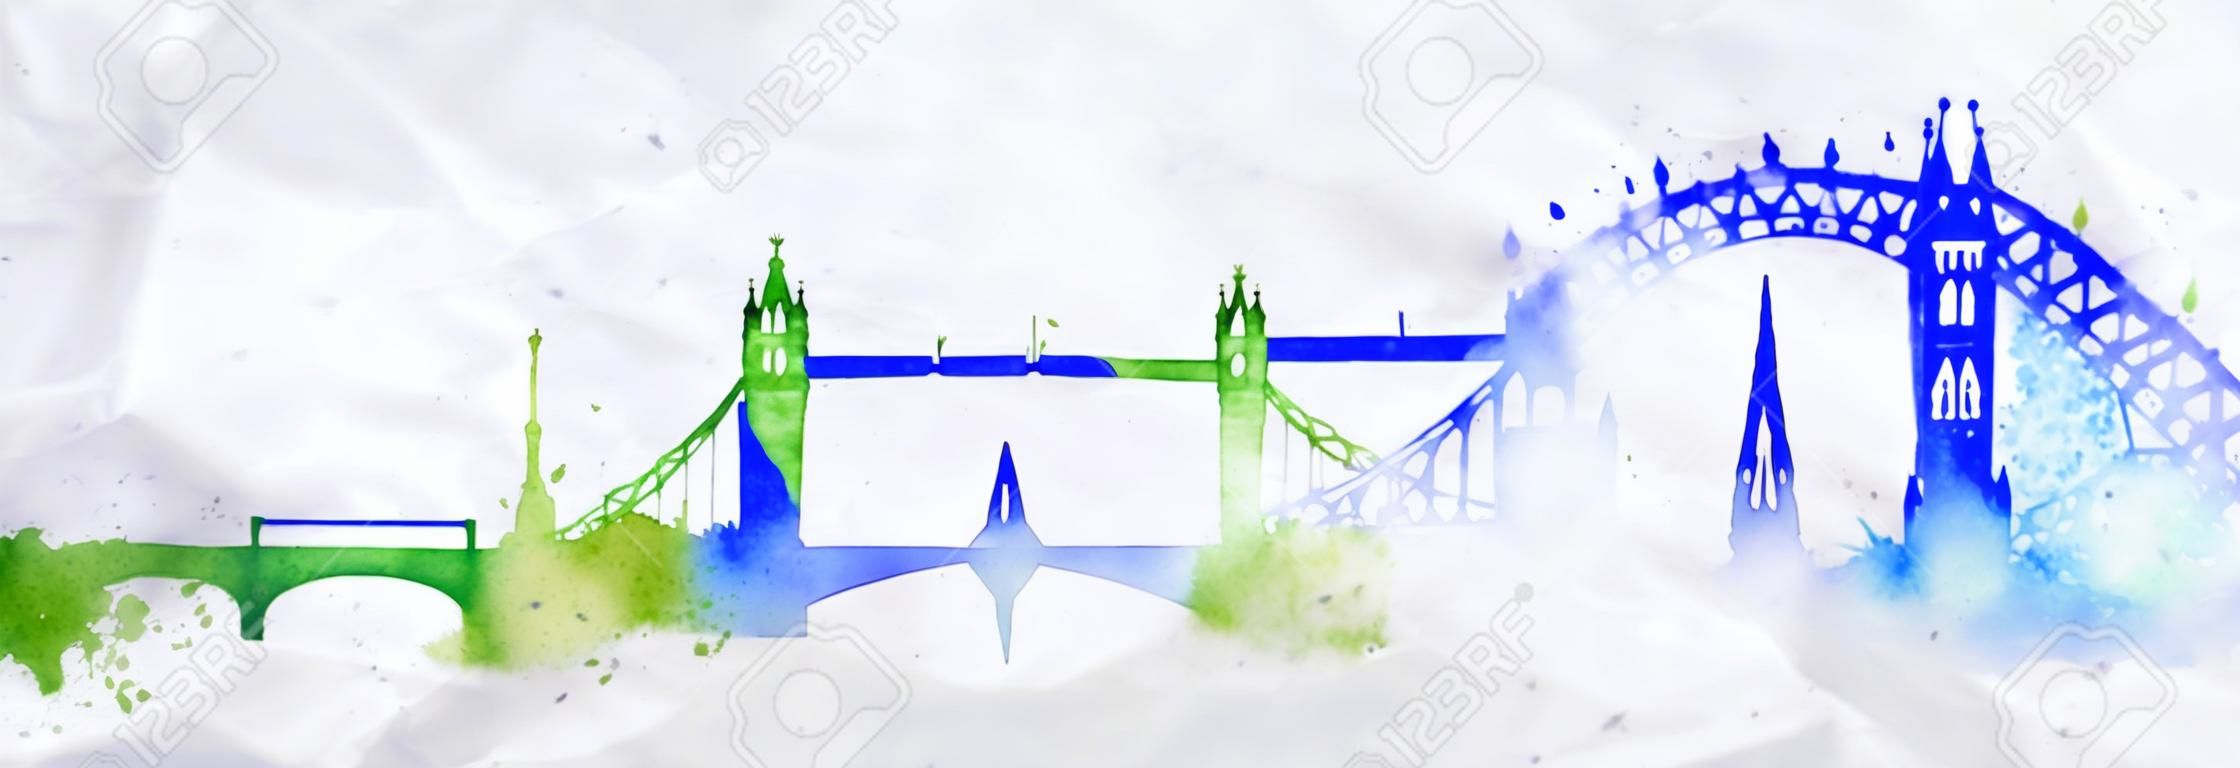 剪影倫敦城市塗上水彩潑濺滴條紋標誌性建築與藍綠色的顏色